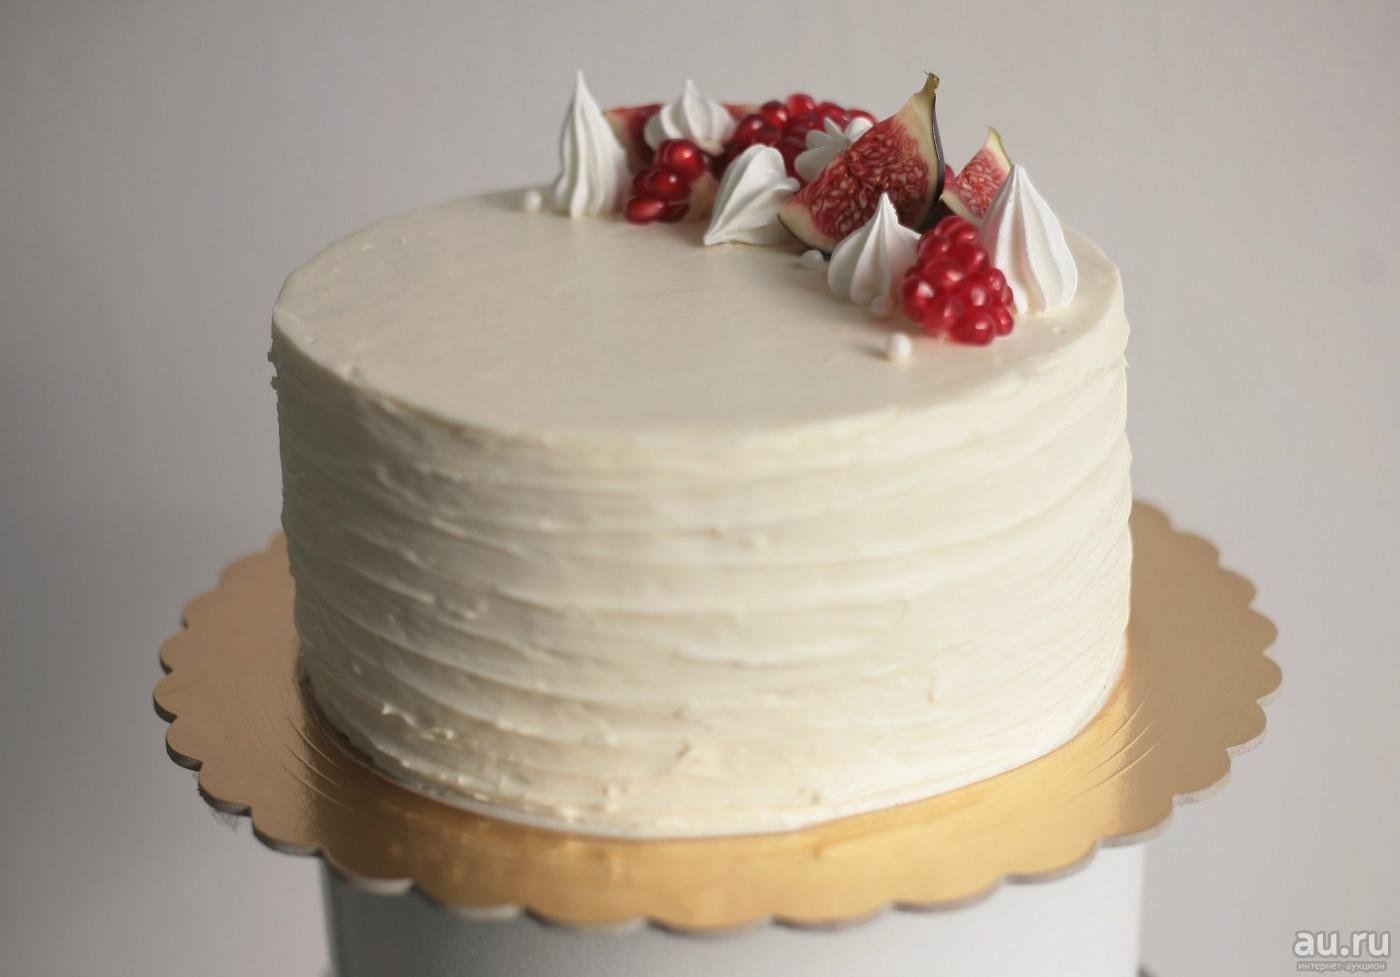 Выравнивание и украшение торта кремом чиз. Торт молочная девочка с кремом чиз. Торт с покрытием крем чиз. Белый торт крем чиз. Торт крем чиз украшение торта.